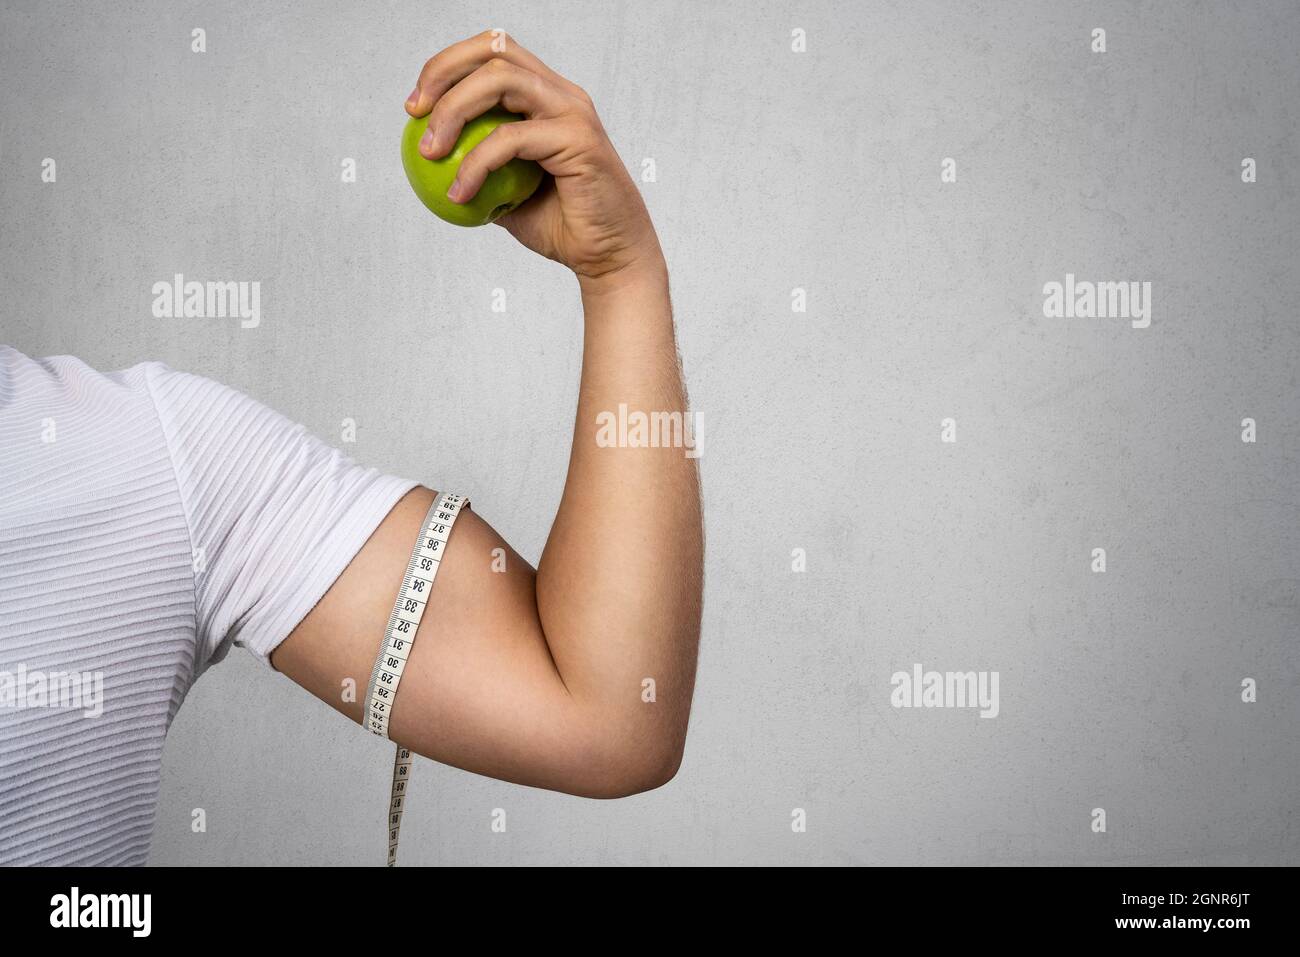 Der junge, athletische Mann hält einen Apfel und zeigt seinen Bizeps. Sport und Ernährung für ein gesundes Leben. Hochwertige Fotos Stockfoto